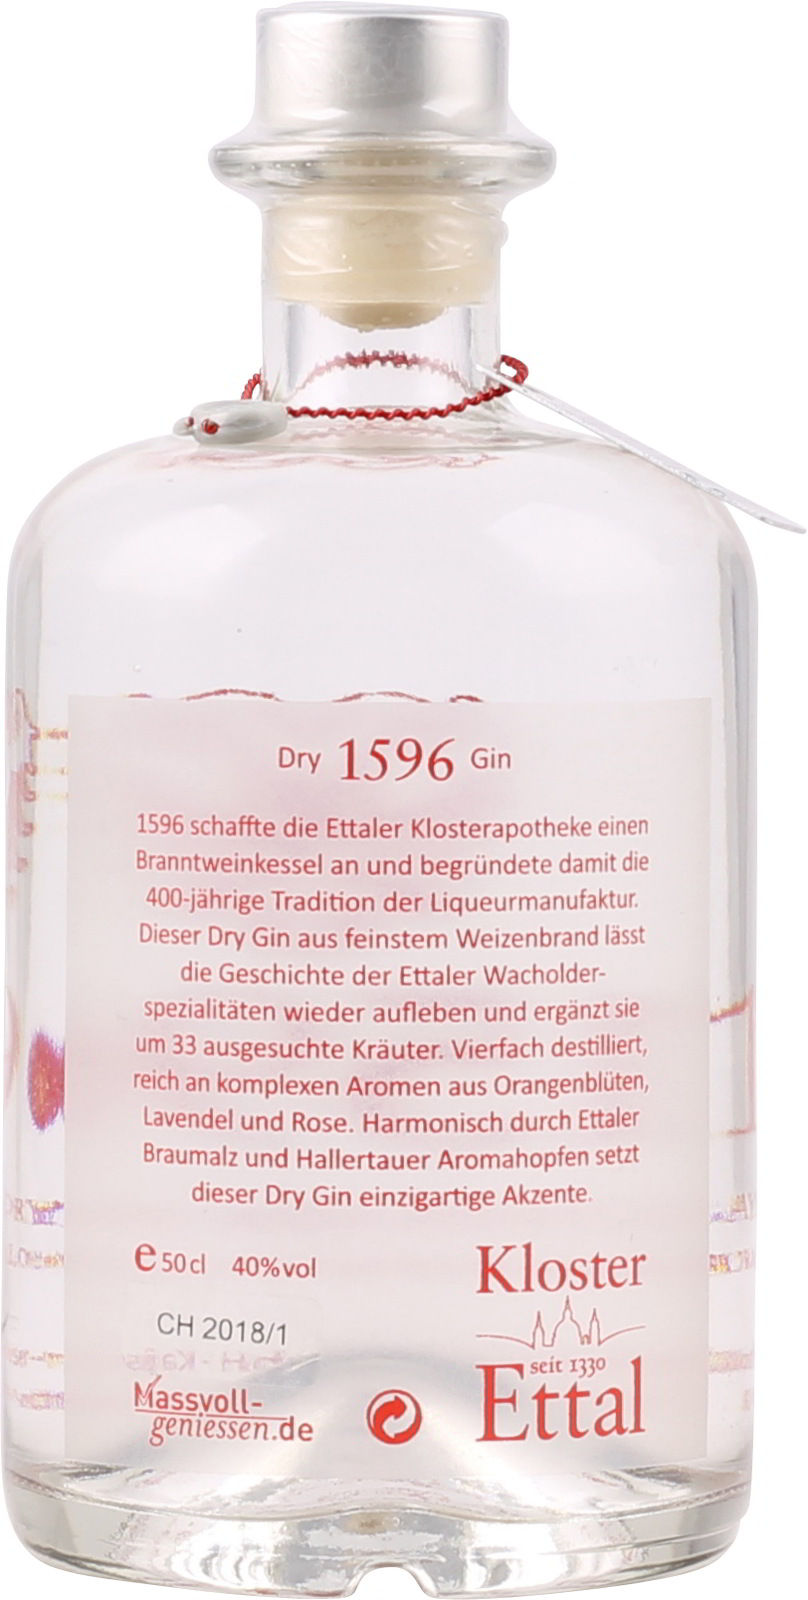 Ettaler % Liter 40 ei Gin 1596 0,5 Vol. Bayerischer Dry